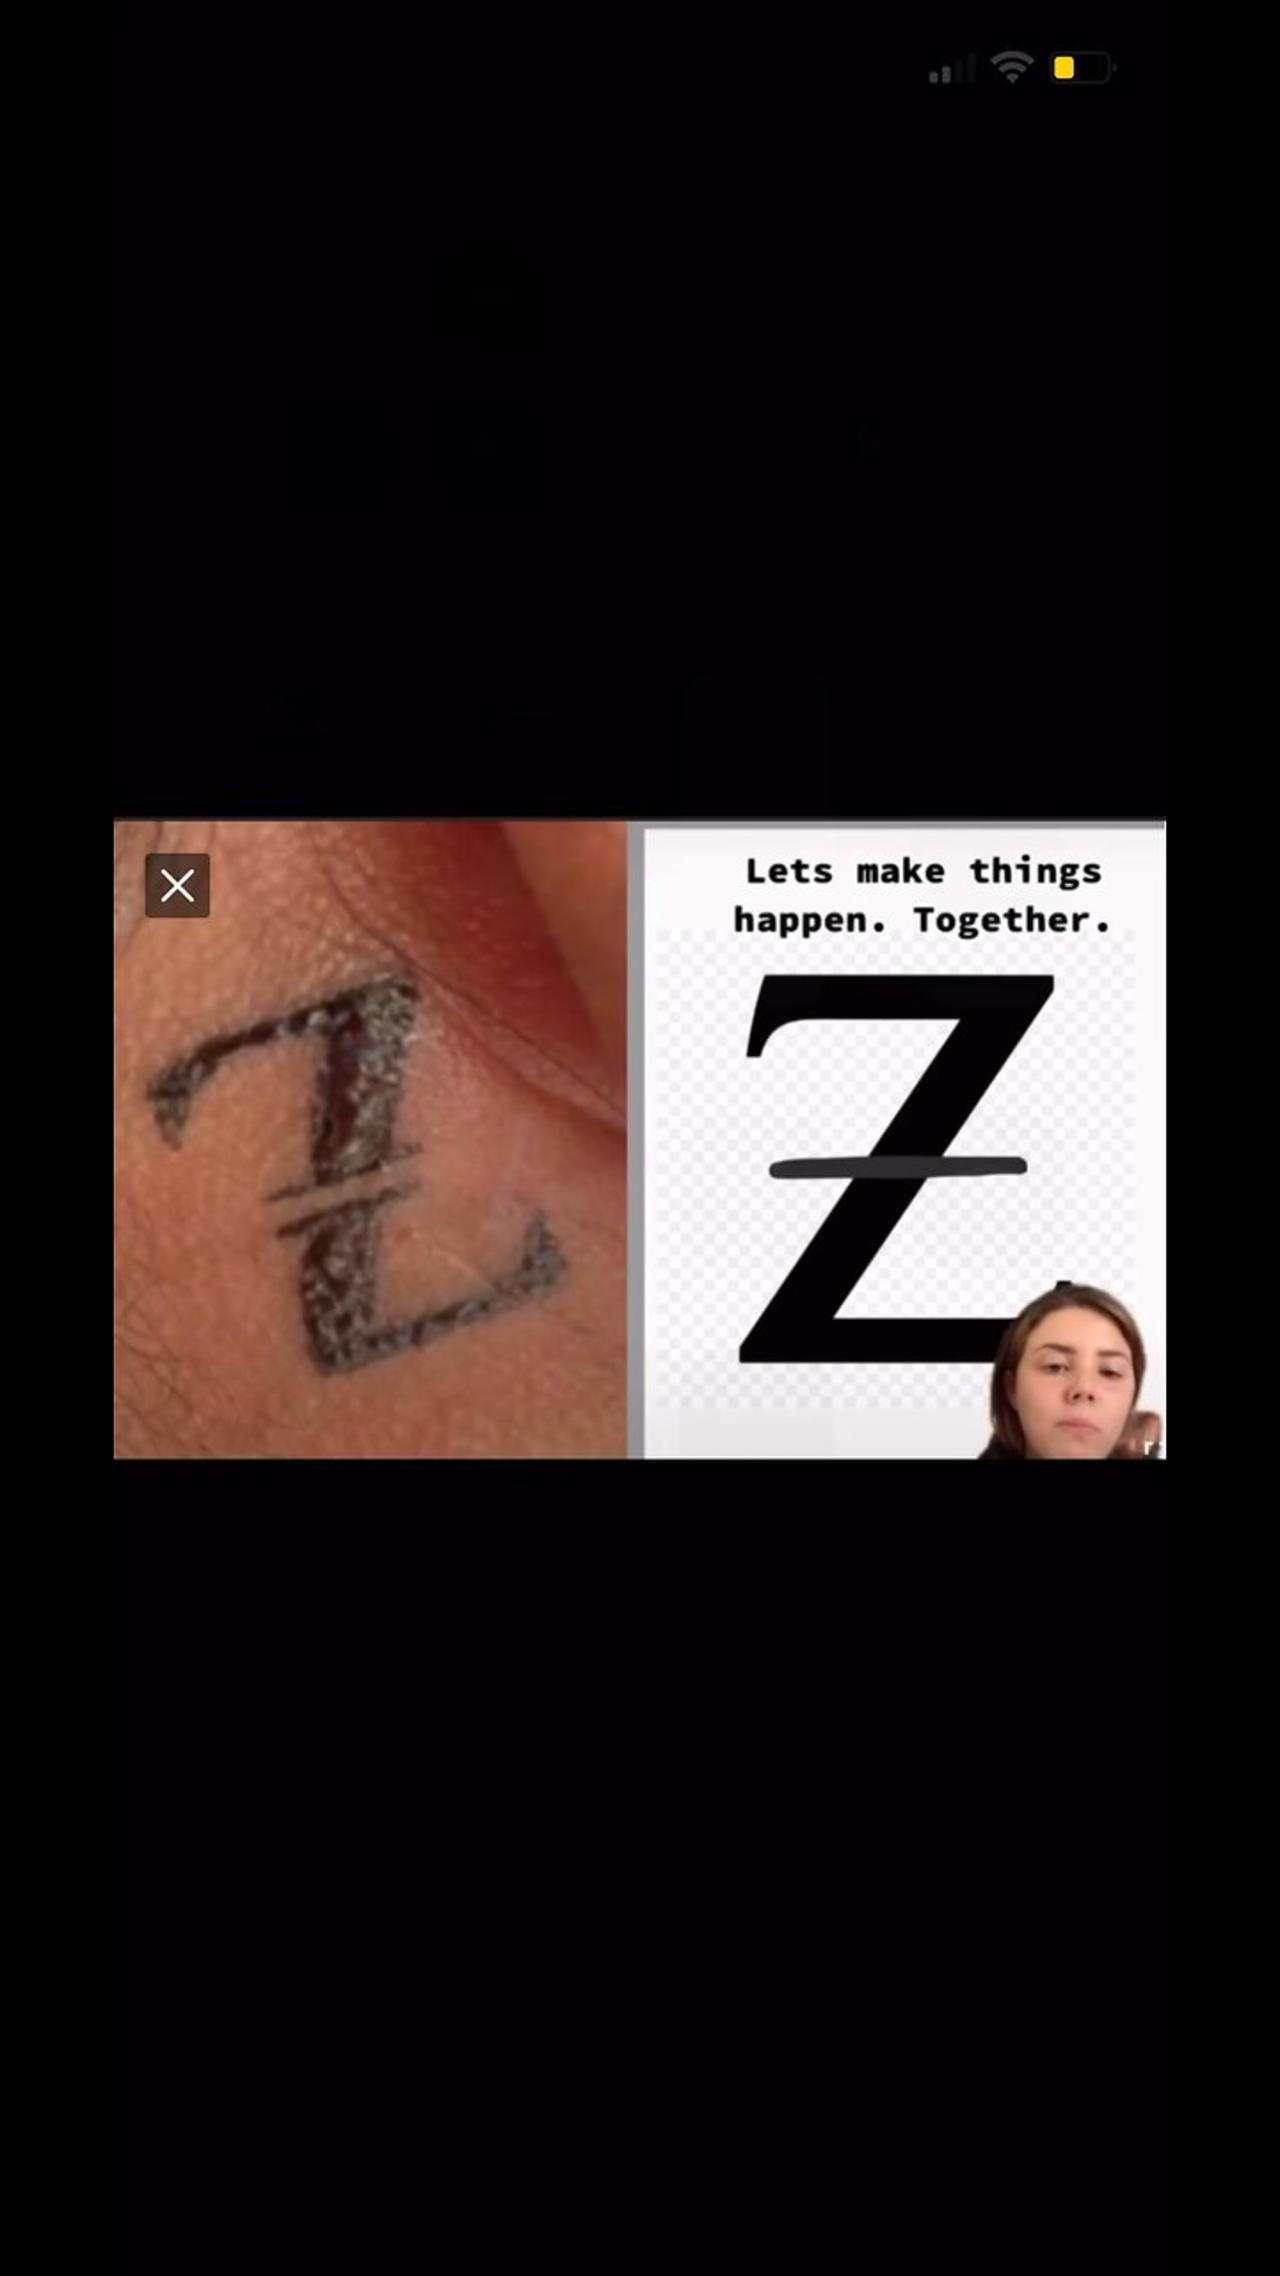 Do not get the gen Z tattoo